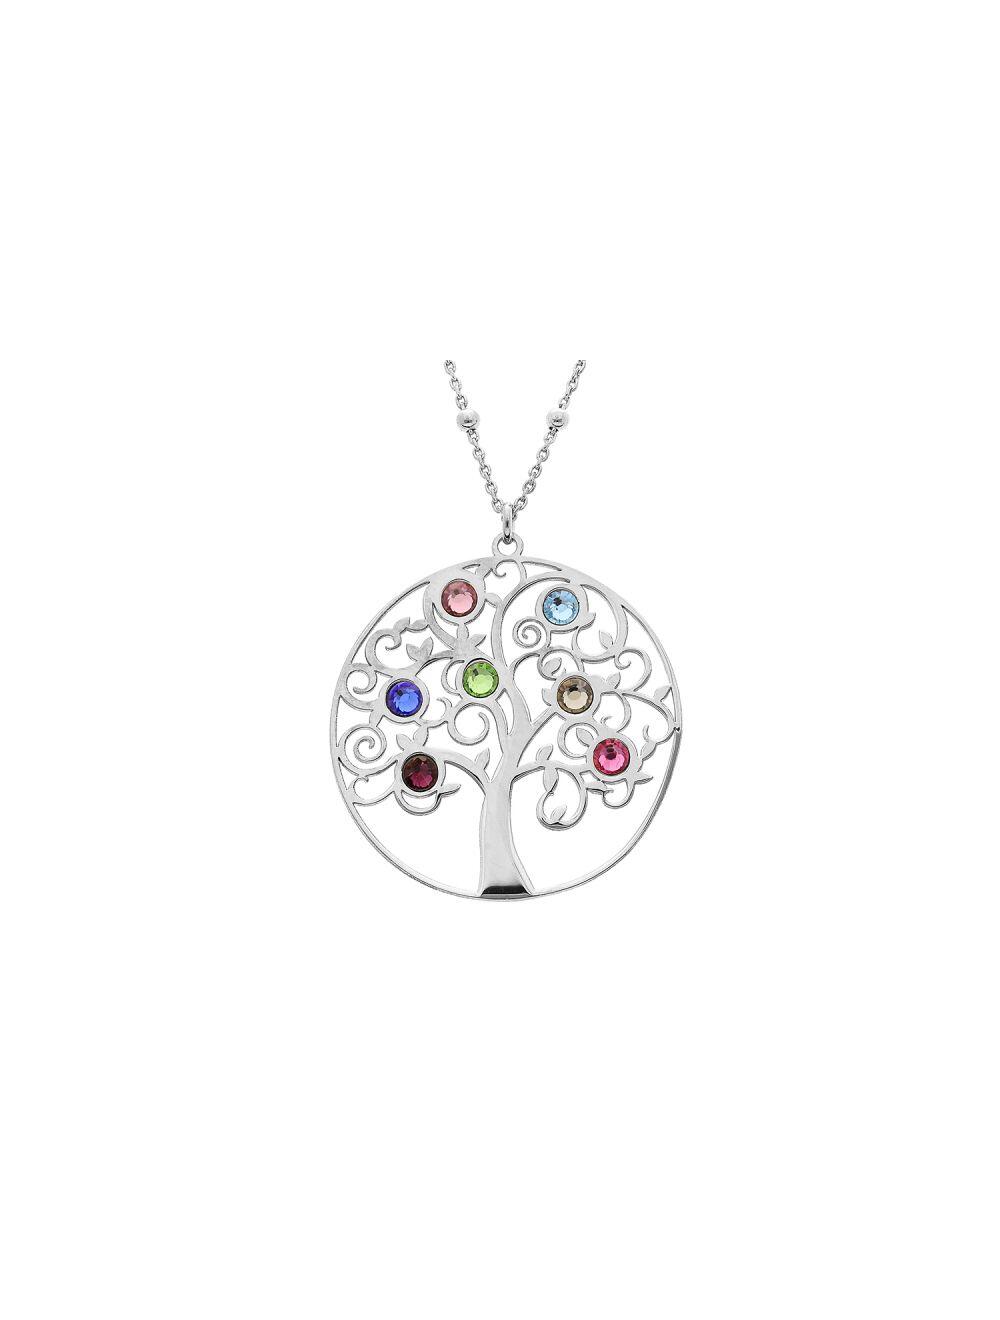 # Collier argent avec pendentif arbre de vie et des pierres synthétique multi couleurs 40+4cm